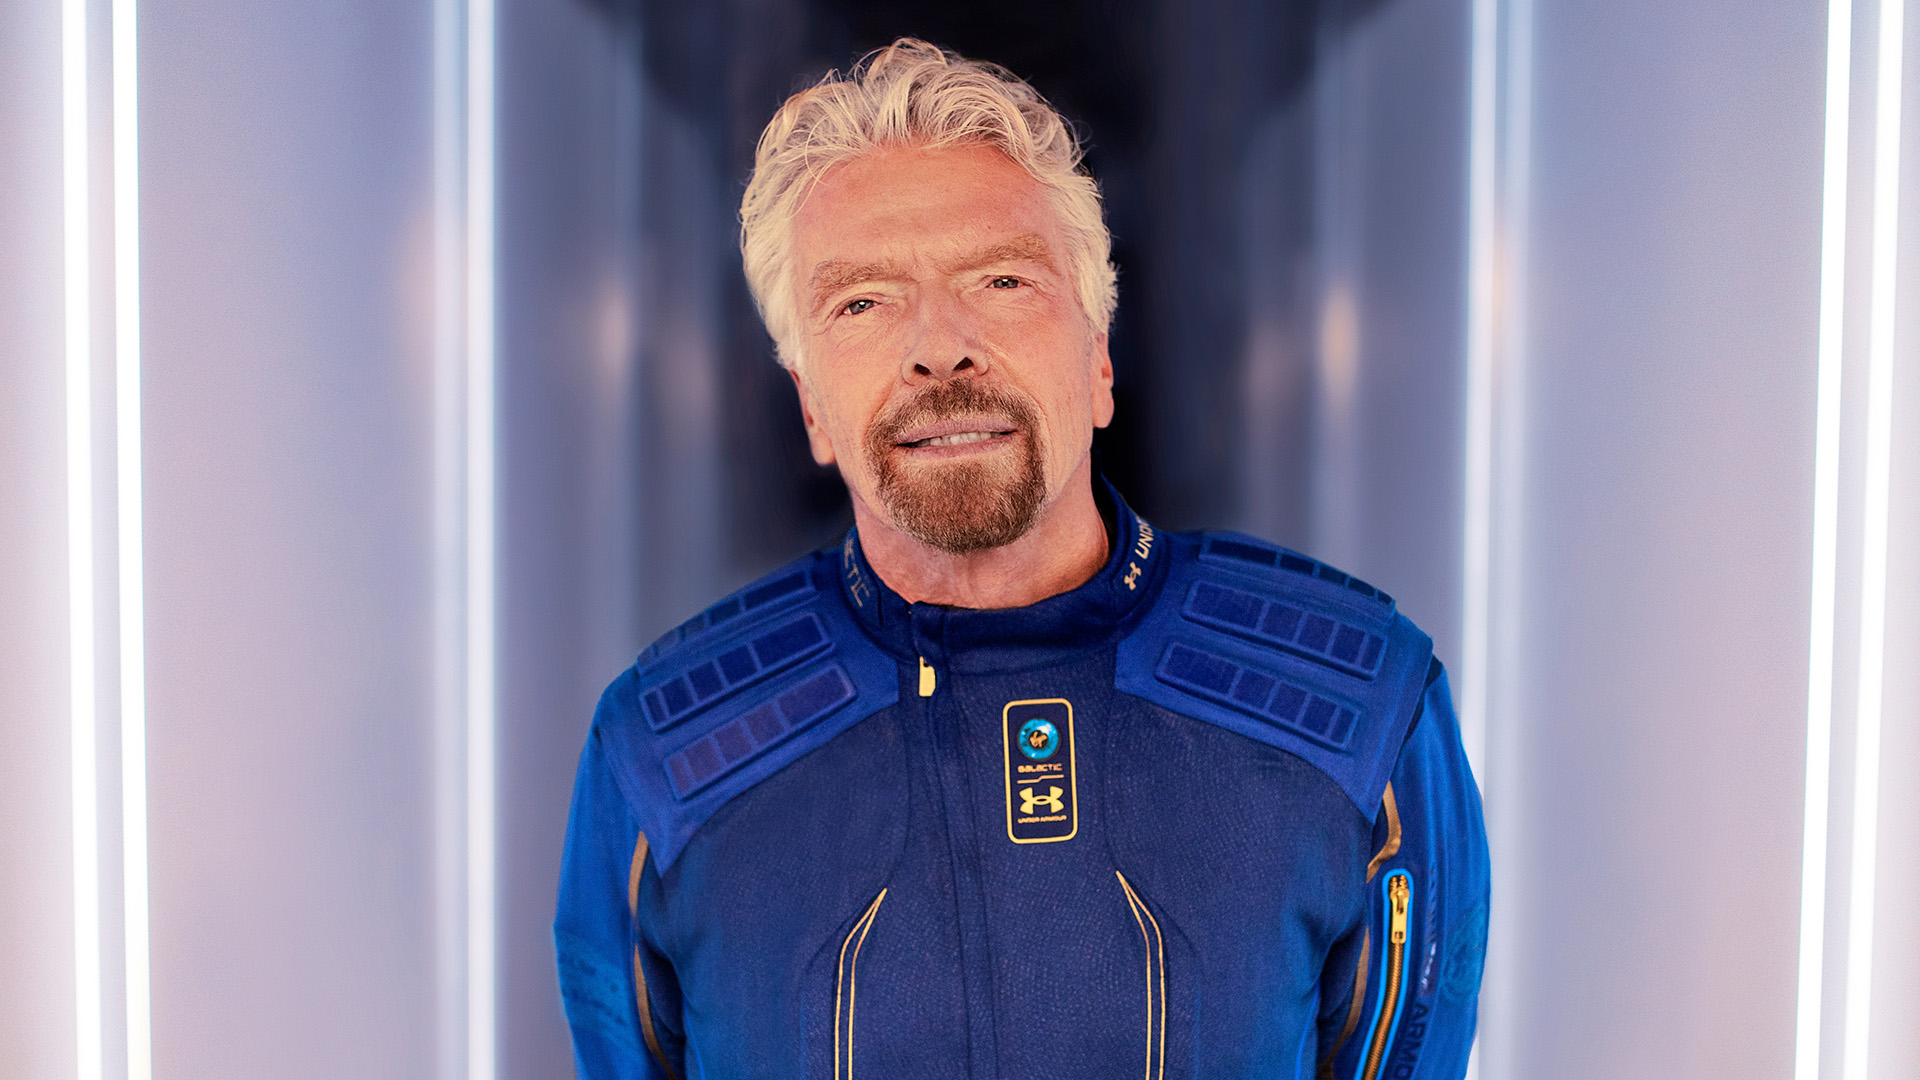 Milliardär Richard Branson posiert in Uniform im Vorfel des geplanten Raumflugs